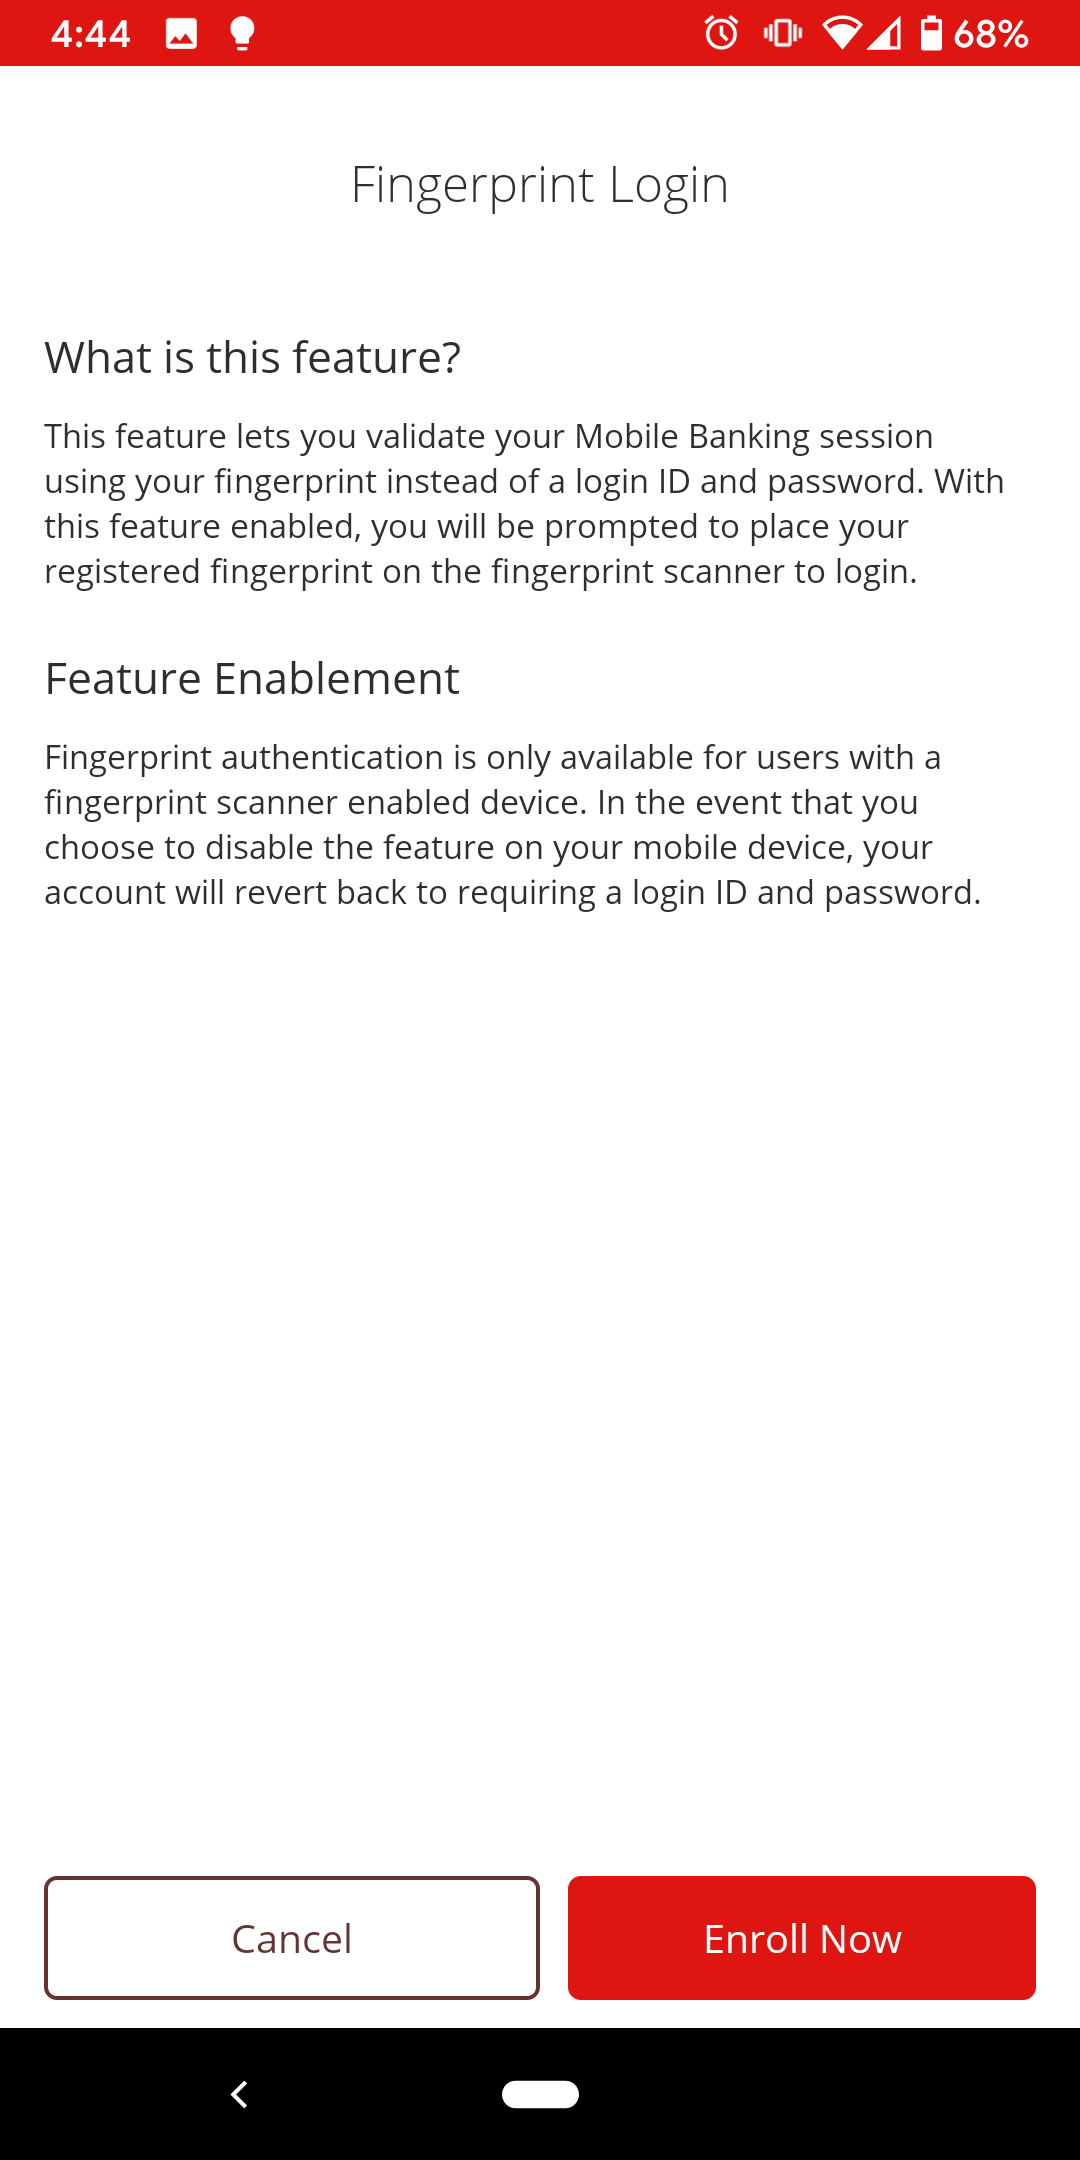 Login - Mobile Login Options Fingerprint Enroll